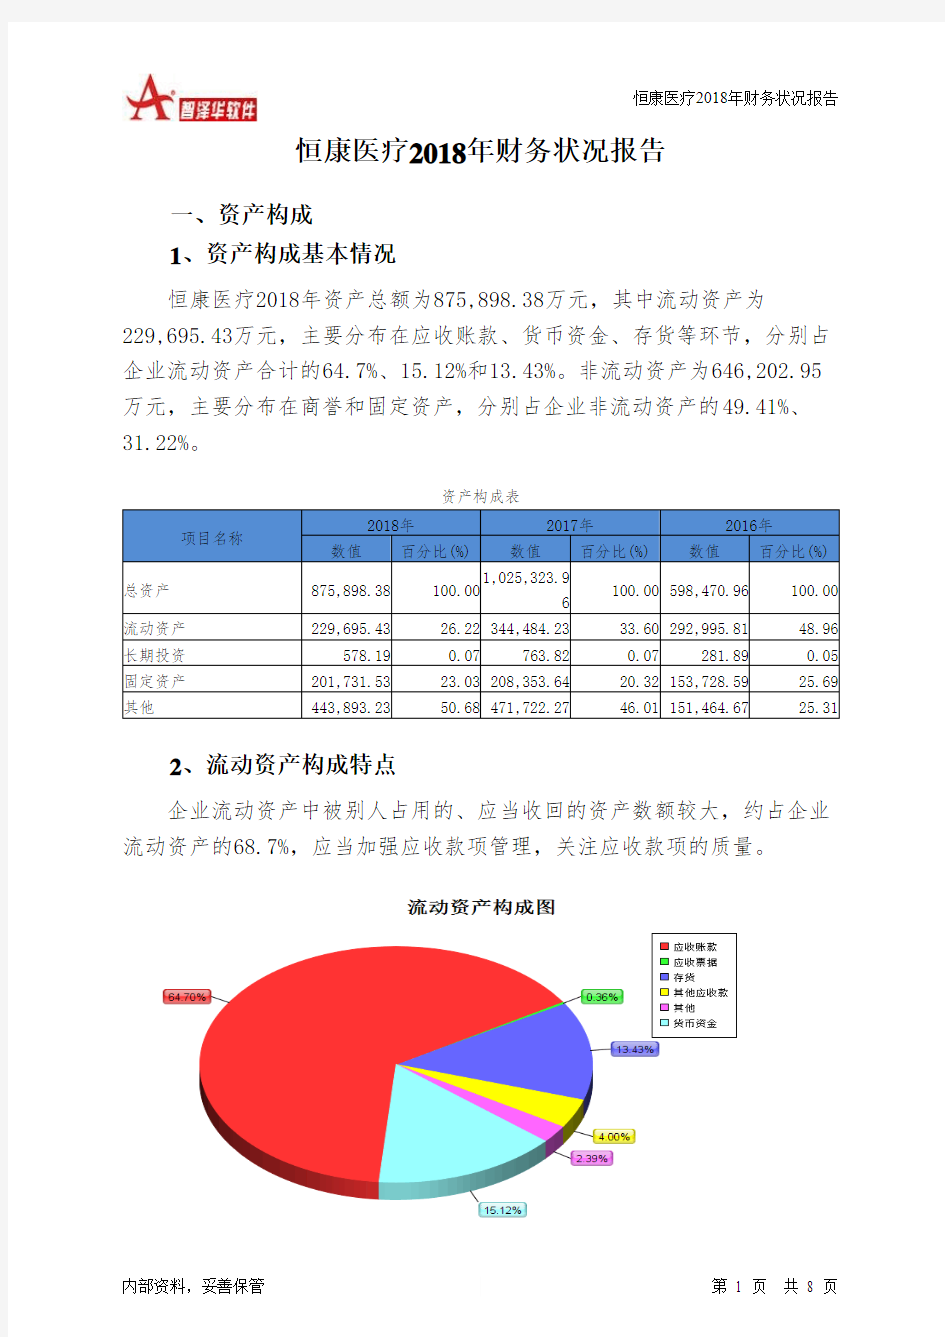 恒康医疗2018年财务状况报告-智泽华